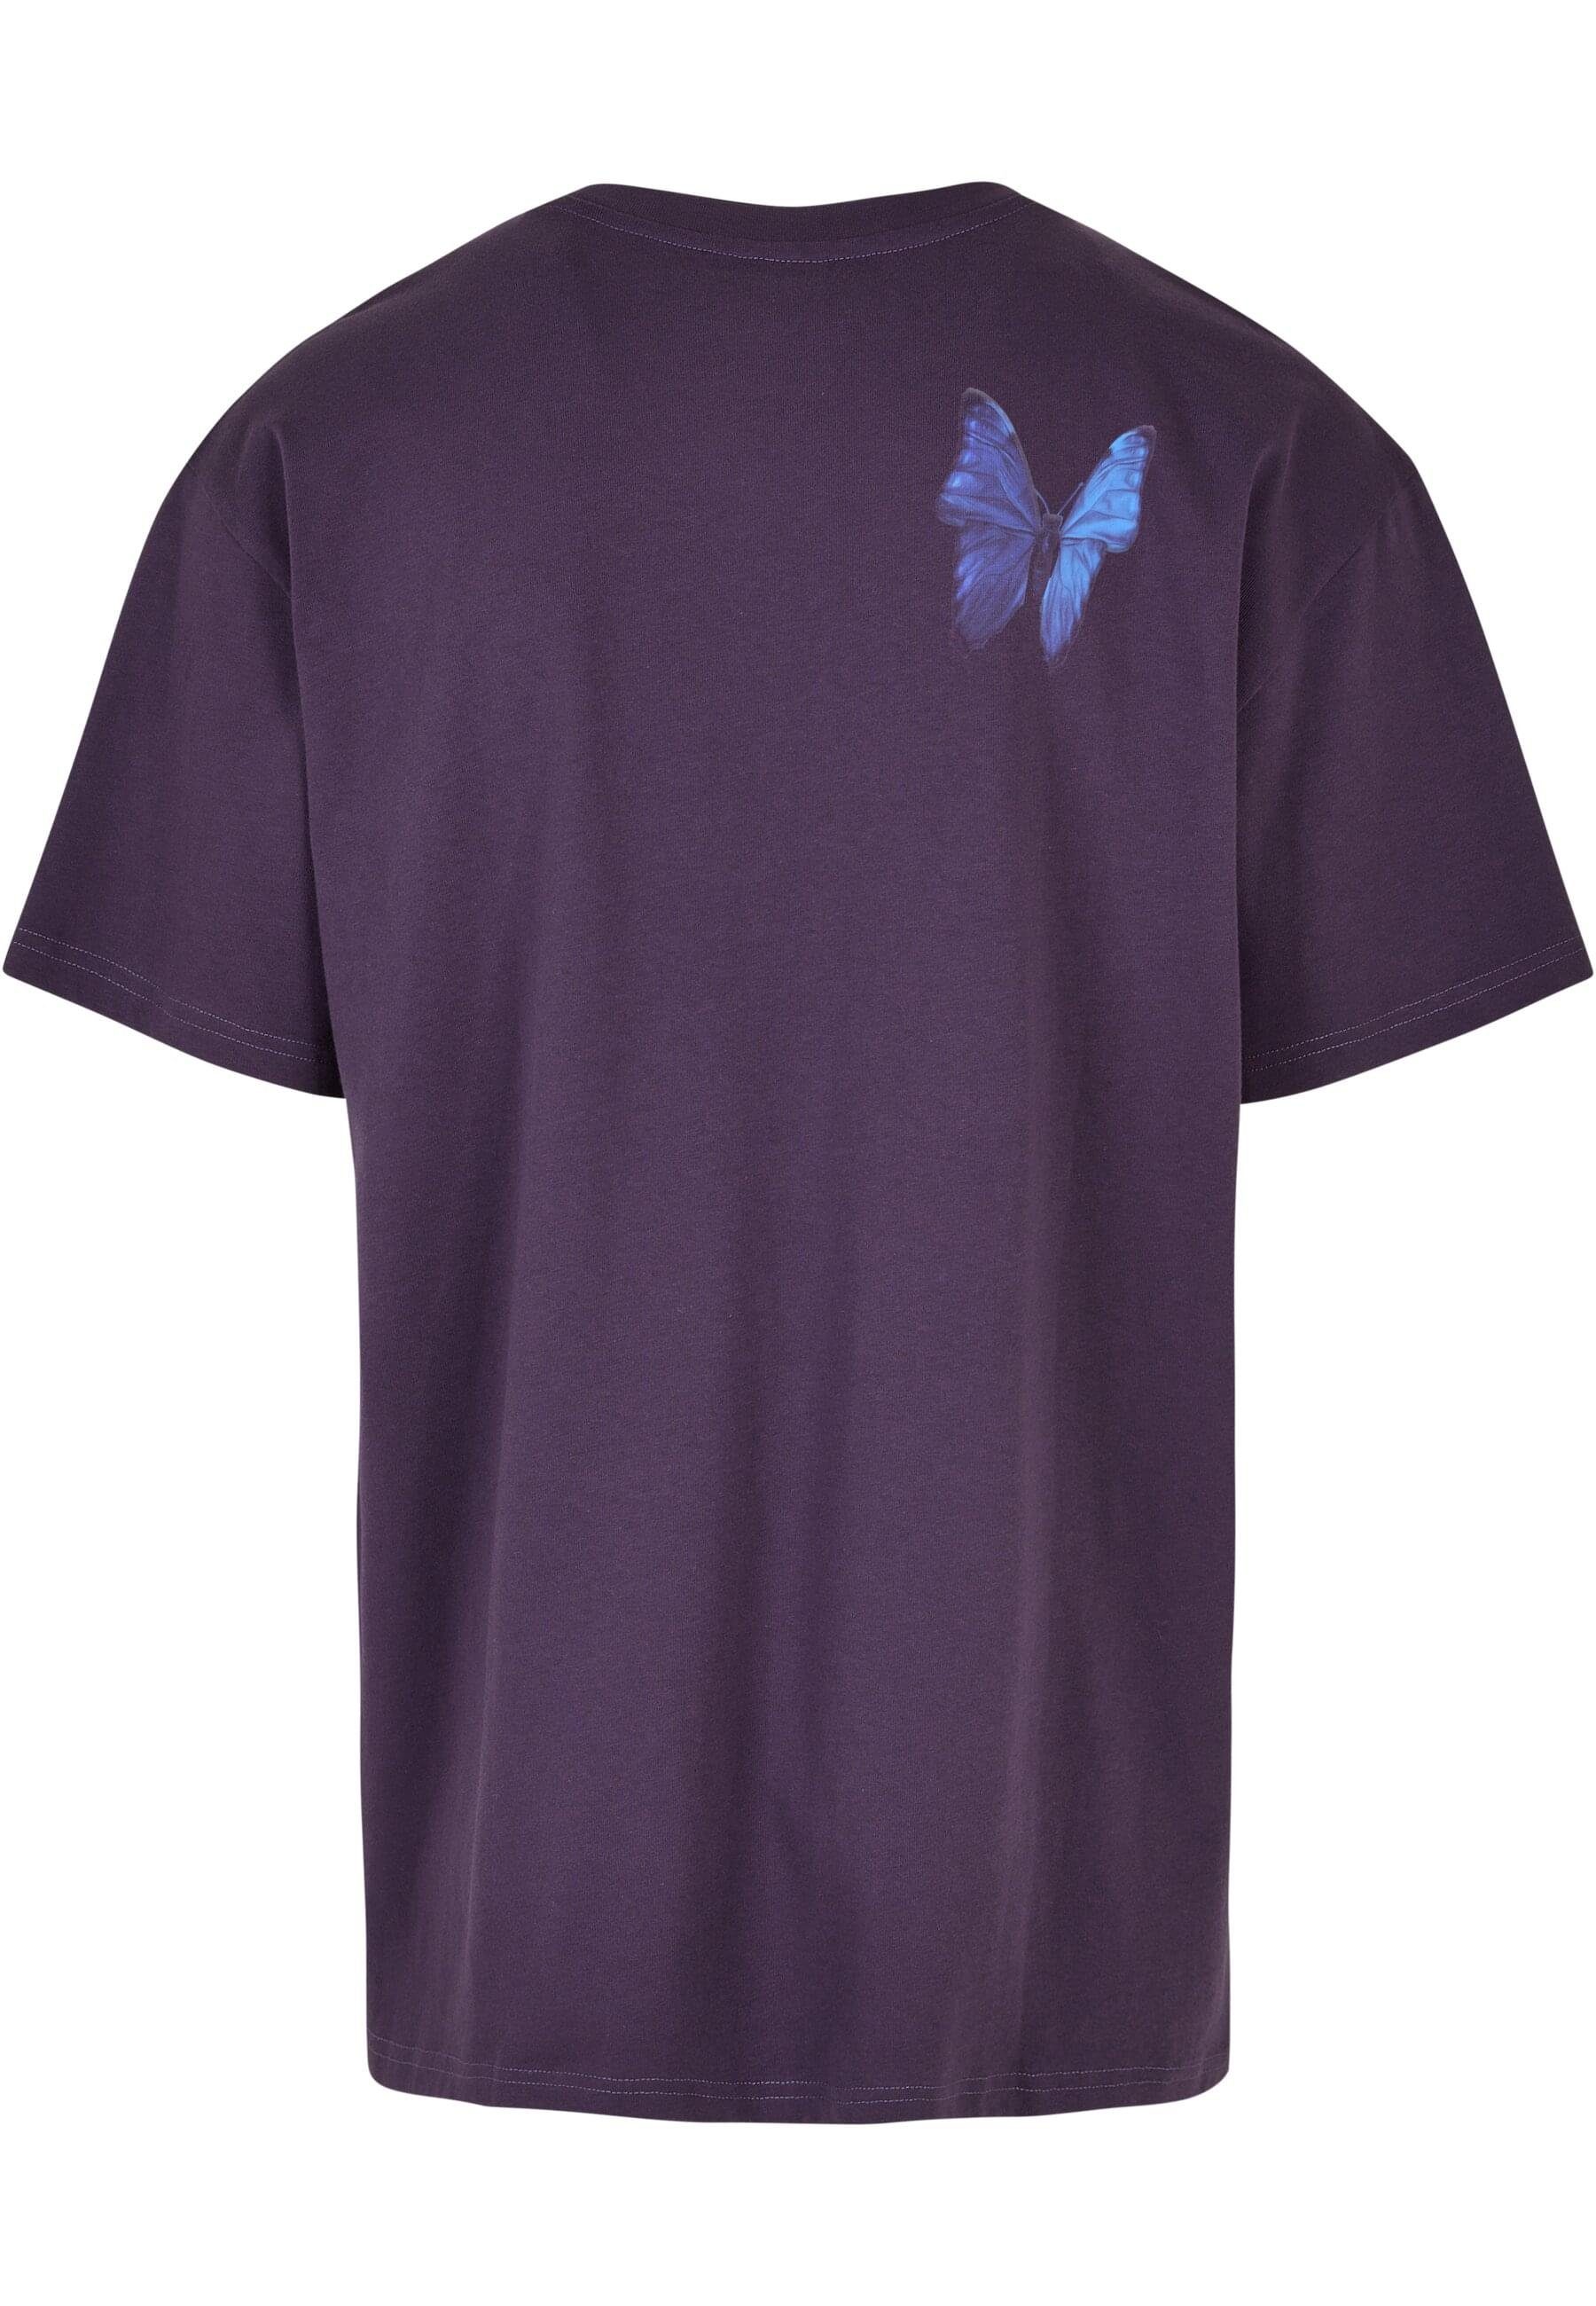 Kurzarmshirt (1-tlg) by Oversize Tee Le purplenight Upscale Mister Papillon Tee Herren